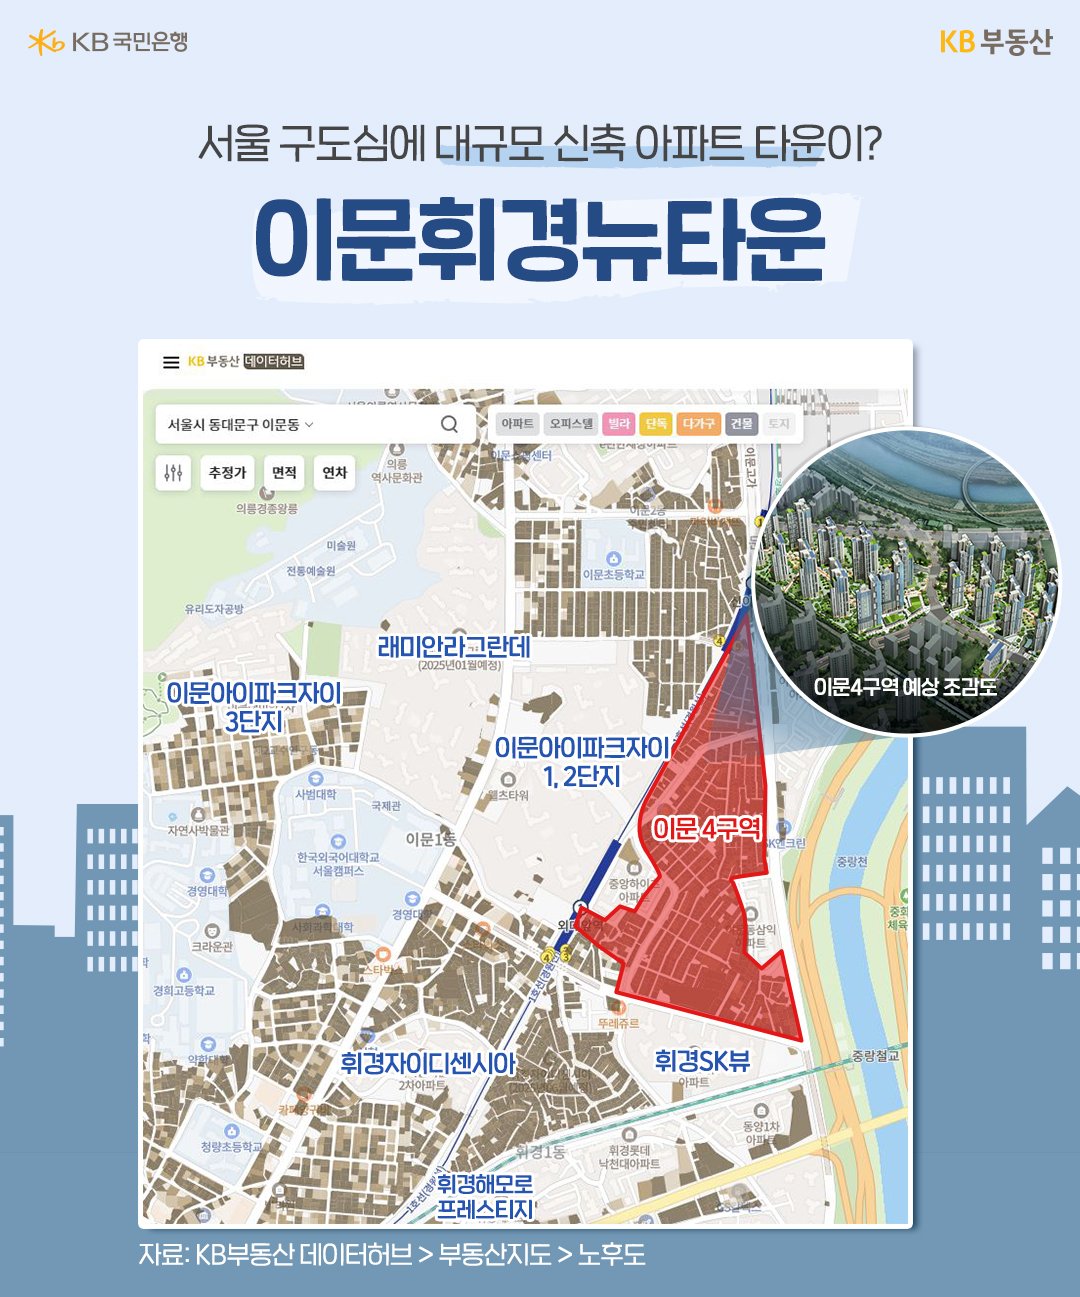 '이문휘경뉴타운'은 '서울지하철 1호선' 회기역, 외대앞역, 신이문역을 걸어서 이용할 수 있어 도심권 '접근성'이 좋습니다. 